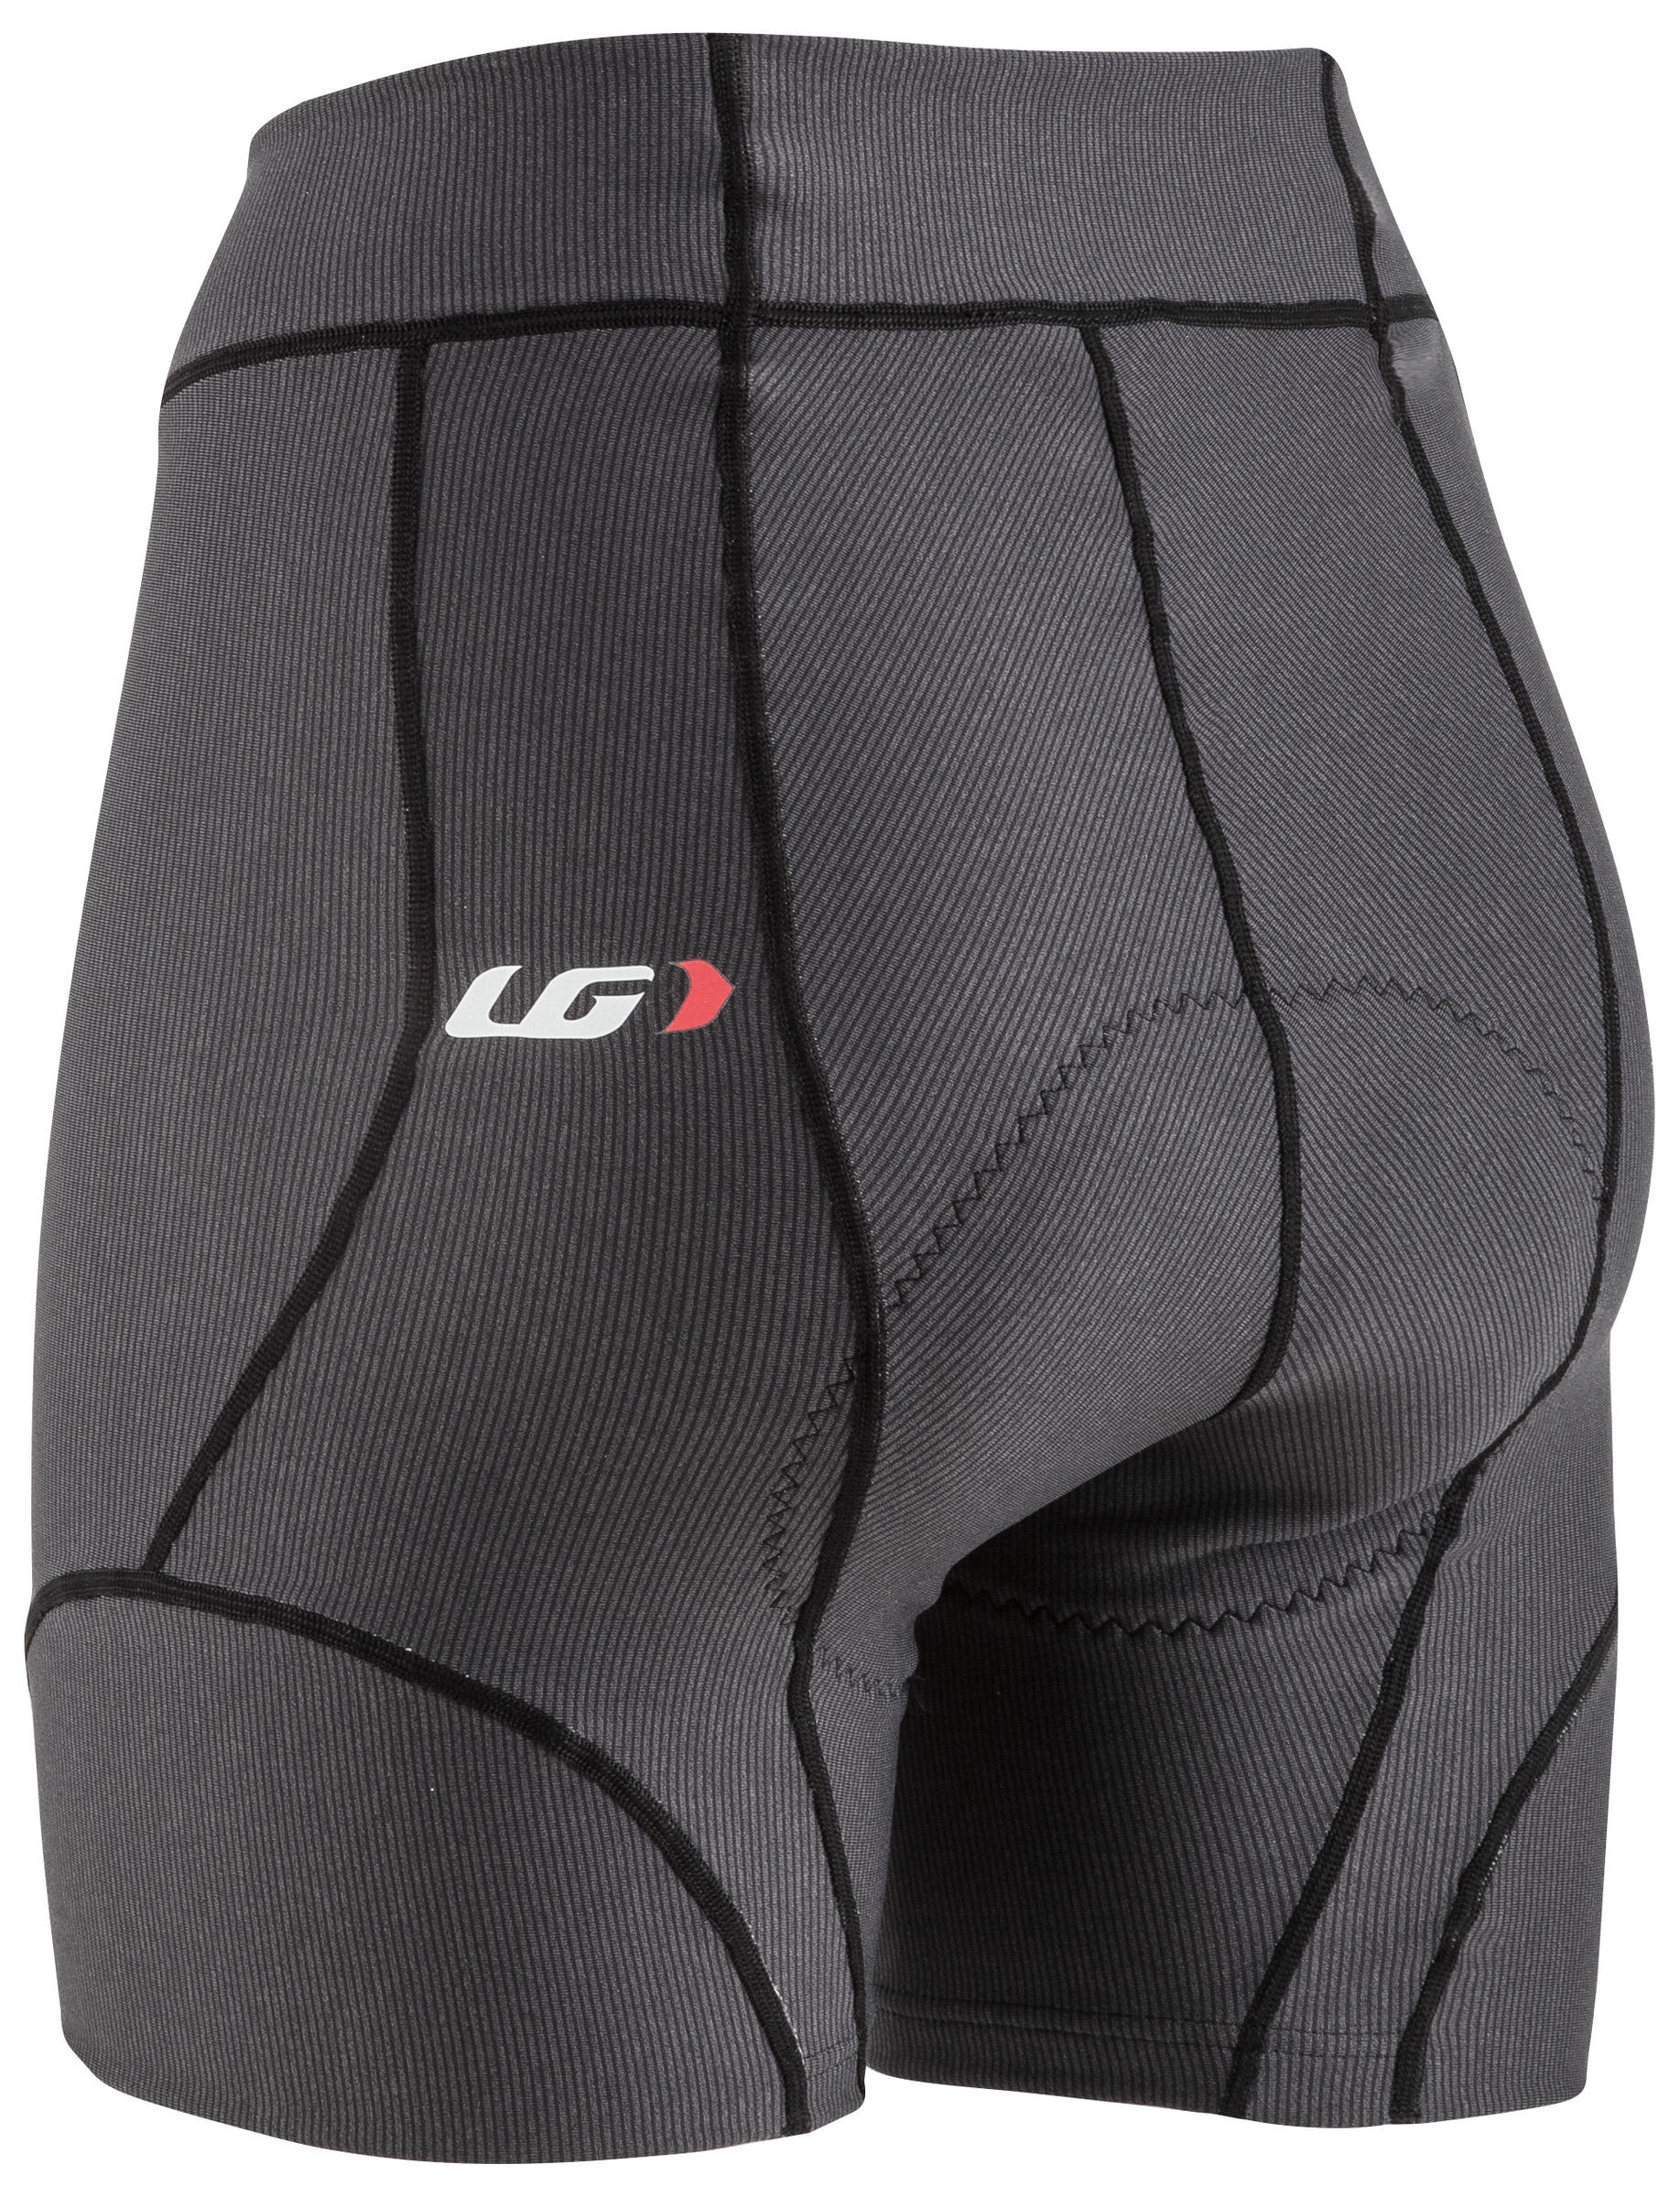 Louis Garneau Women's Fit sensor 5.5 Cycling Shorts XL Shiraz Retail $79.99 